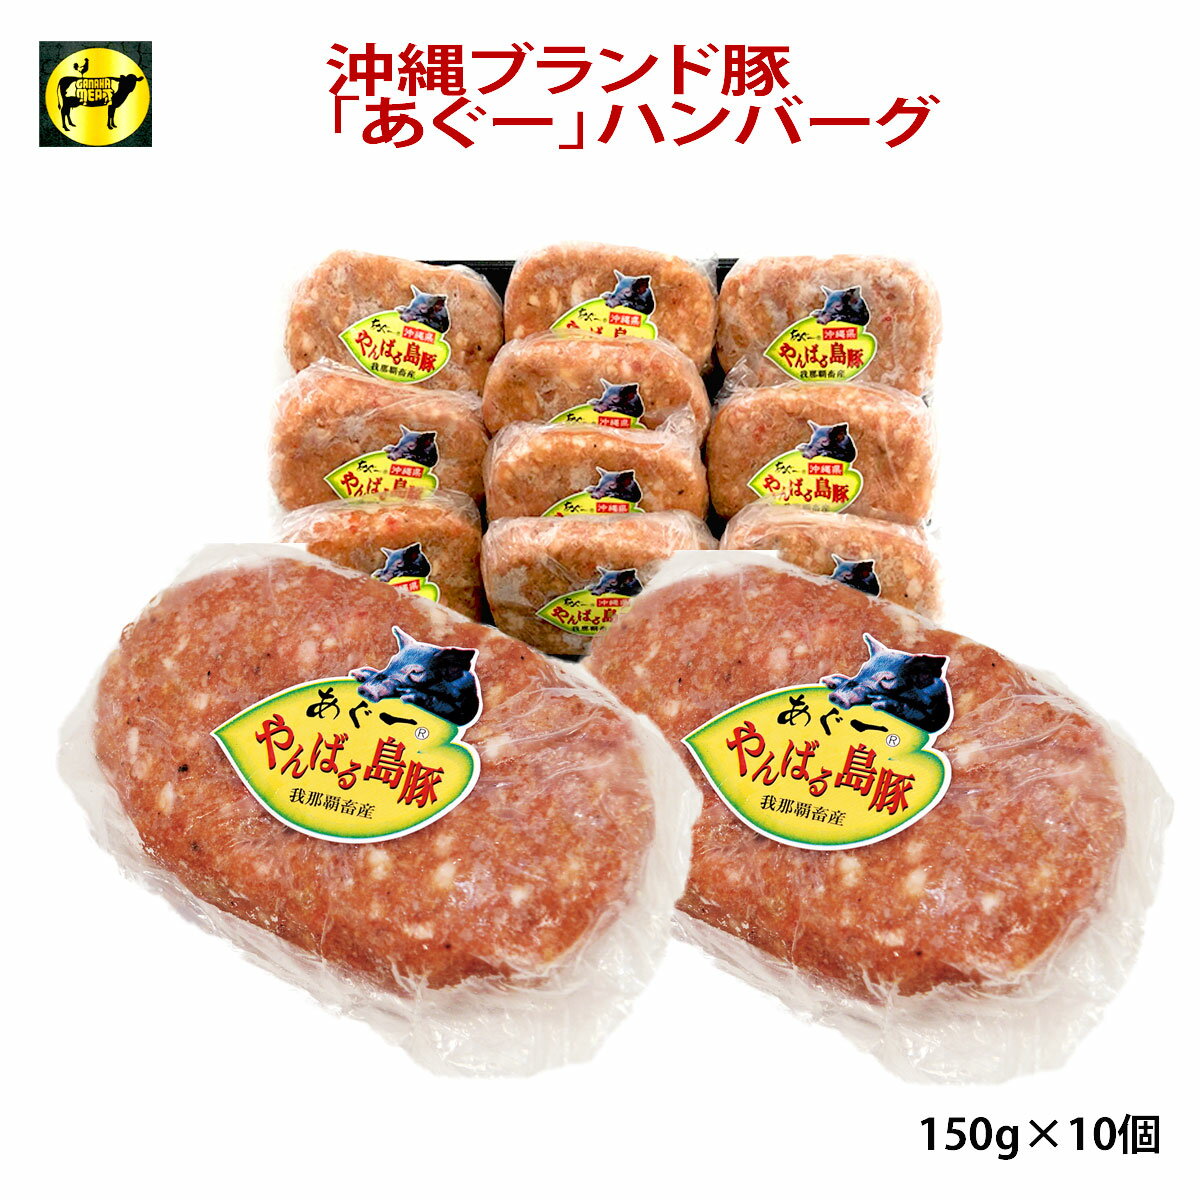 沖縄あぐー豚 豚肉 フレッシュミートがなは あぐー豚ハンバーグ 150g×10ヶ 送料別 ジューシー 肉汁たっぷり 冷凍 追加 ちょい足し 焼くだけ お手軽